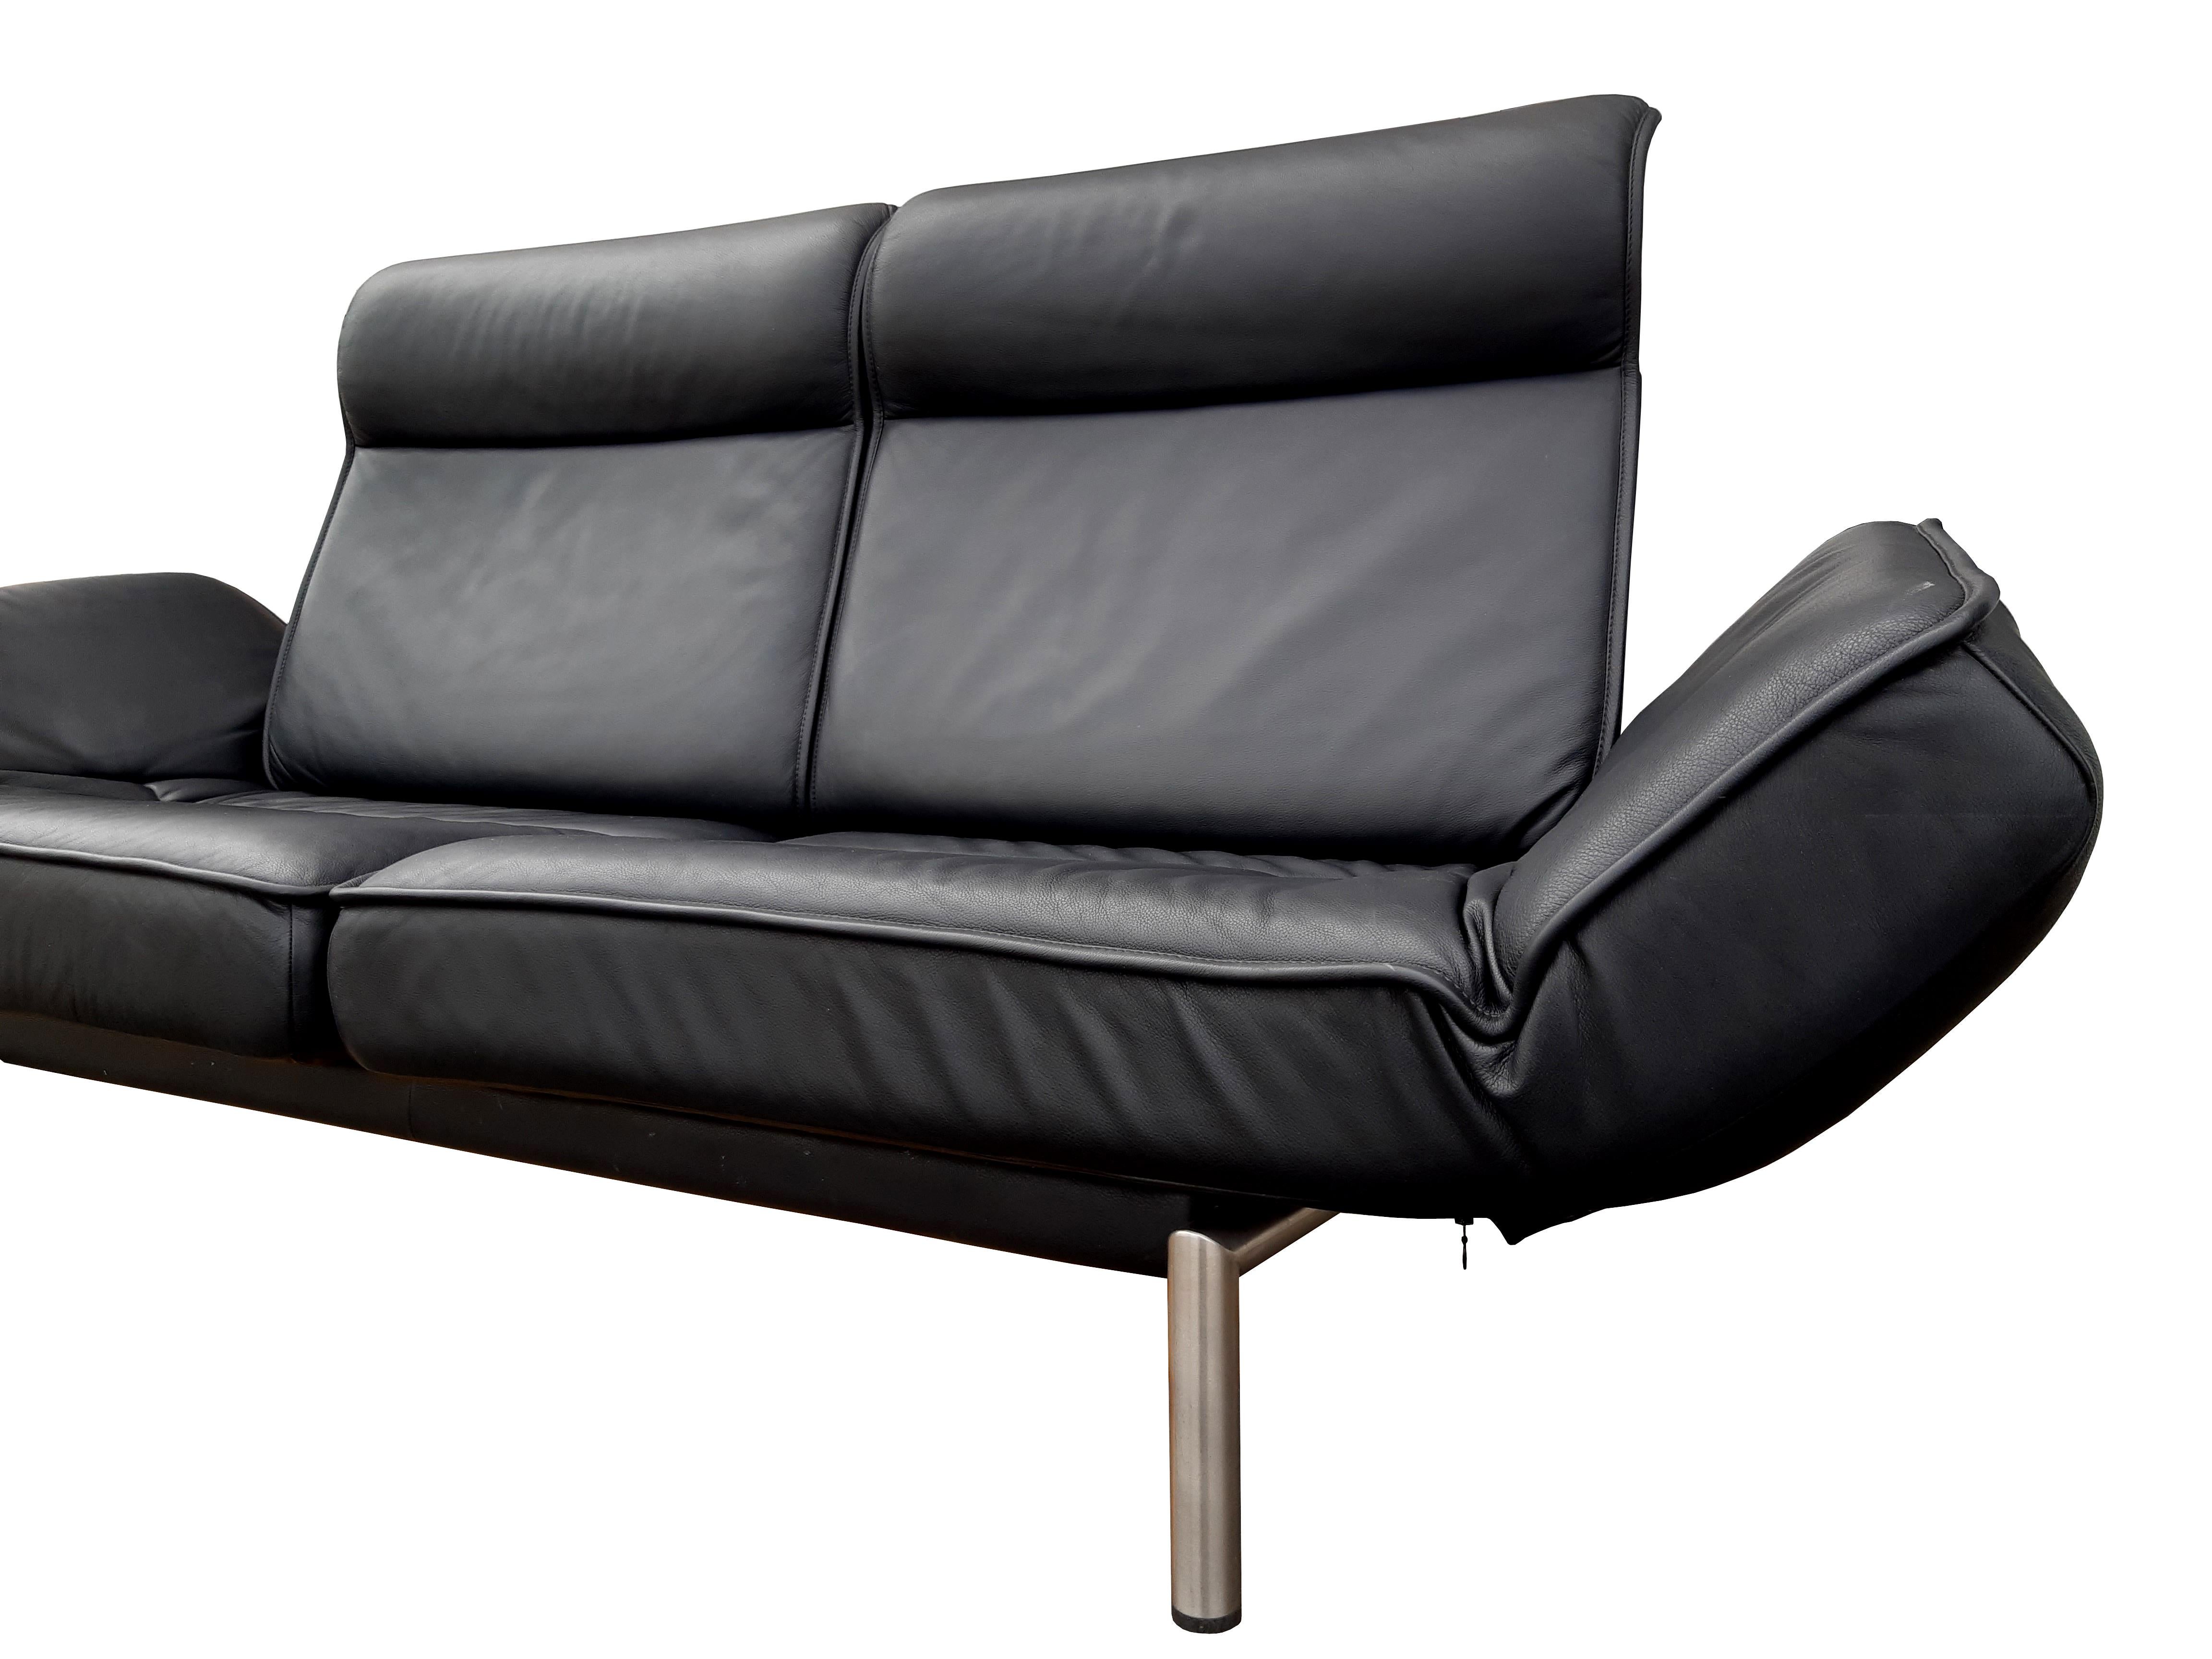 Sofa DE SEDE DS-450 Twist

Design: Thomas Althaus

Das Gestell besteht aus einer Metallgrundkonstruktion aus gebürsteten Edelstahlrohren, die Sitze und Armlehnen aus einem tragenden Komfort-Schaumkern mit Polsterwatteauflage.

Die Rückenkissen sind